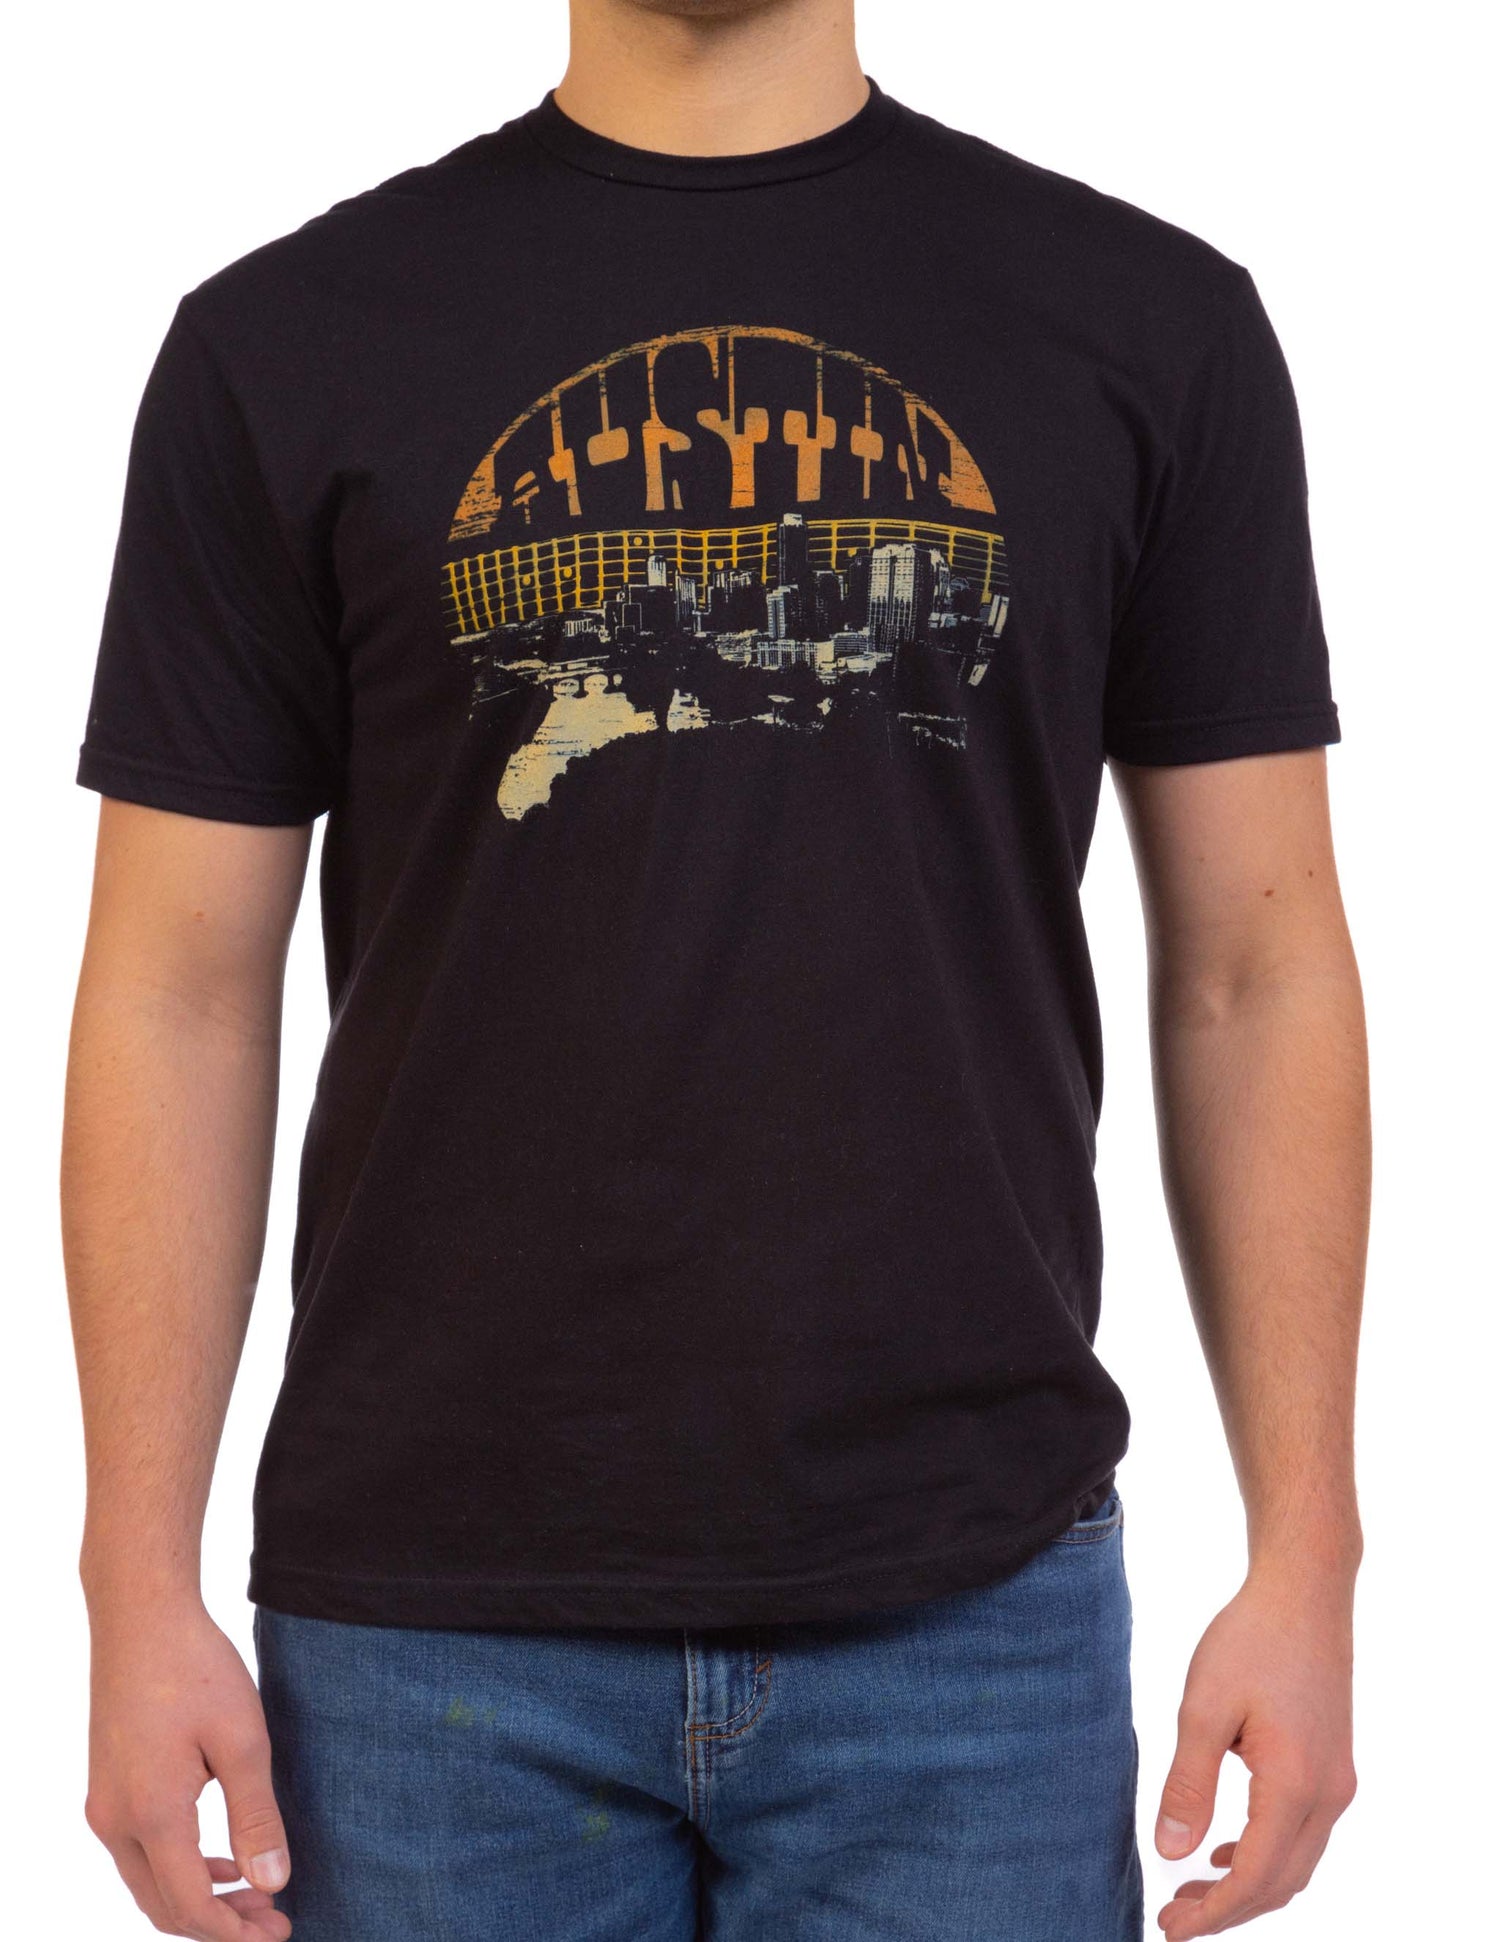 Austin Texas Sunset T-Shirt